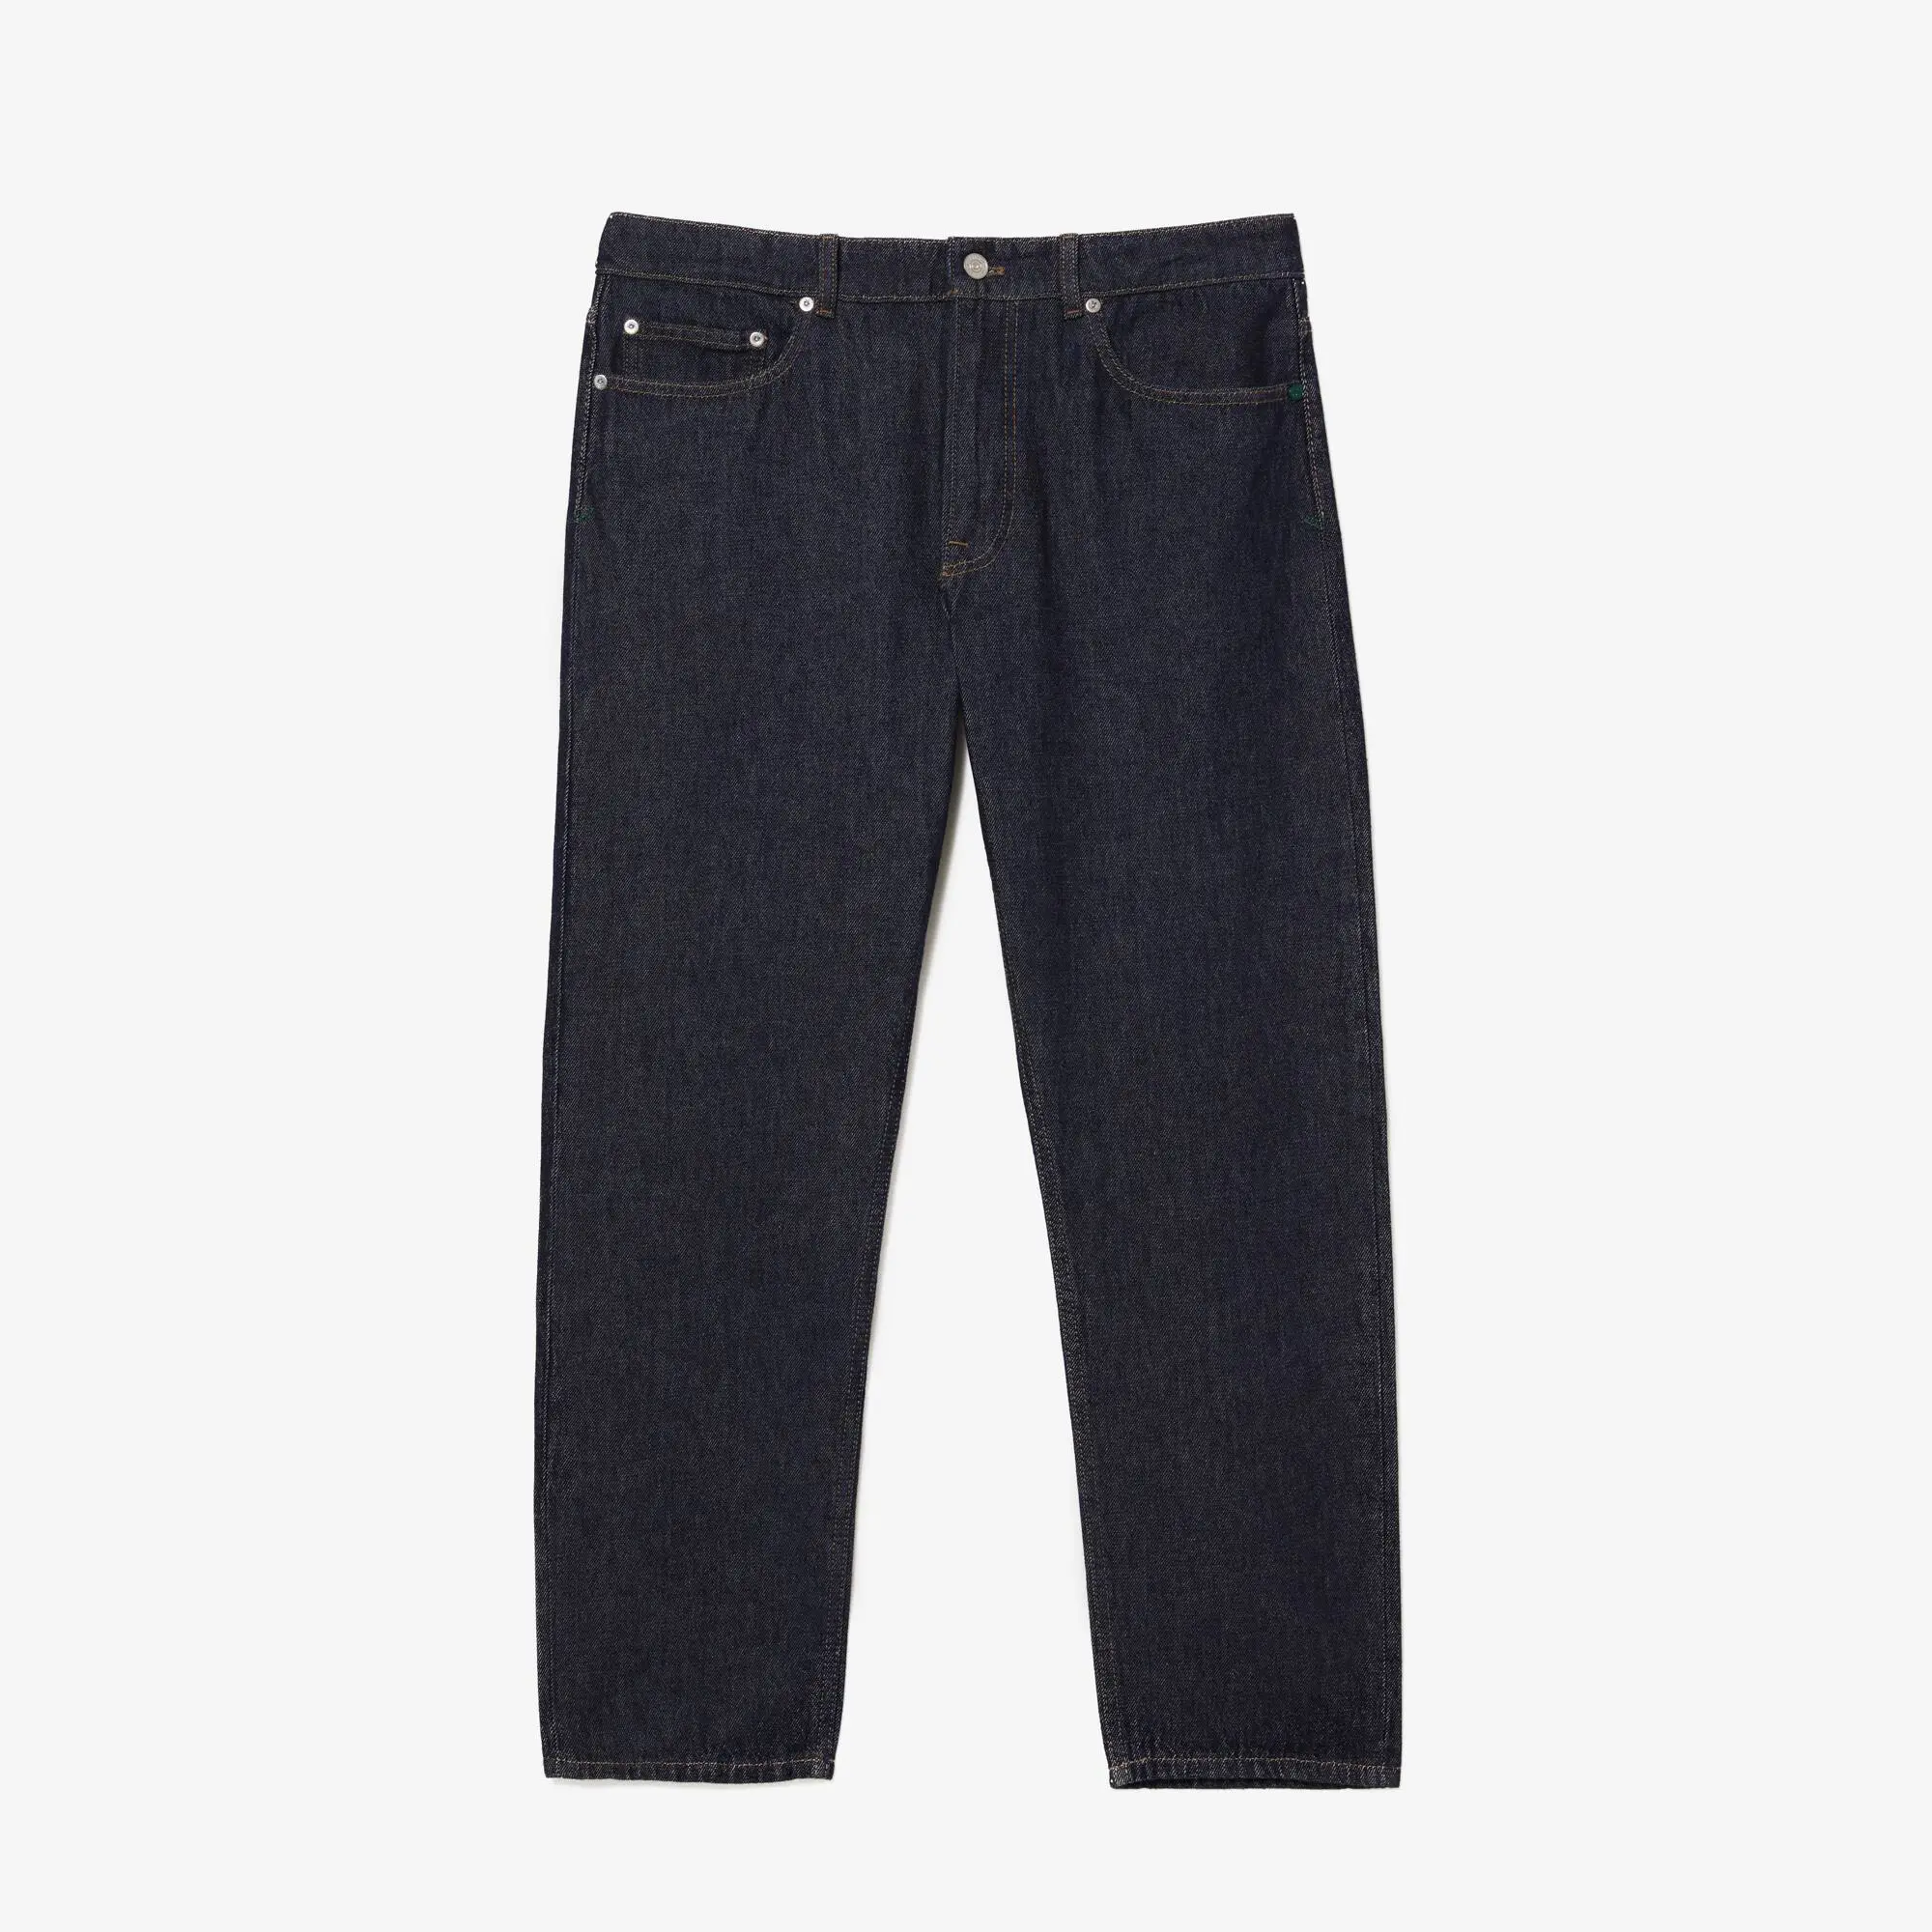 Lacoste Men's Lacoste Denim Cotton Five-Pocket Jeans. 2